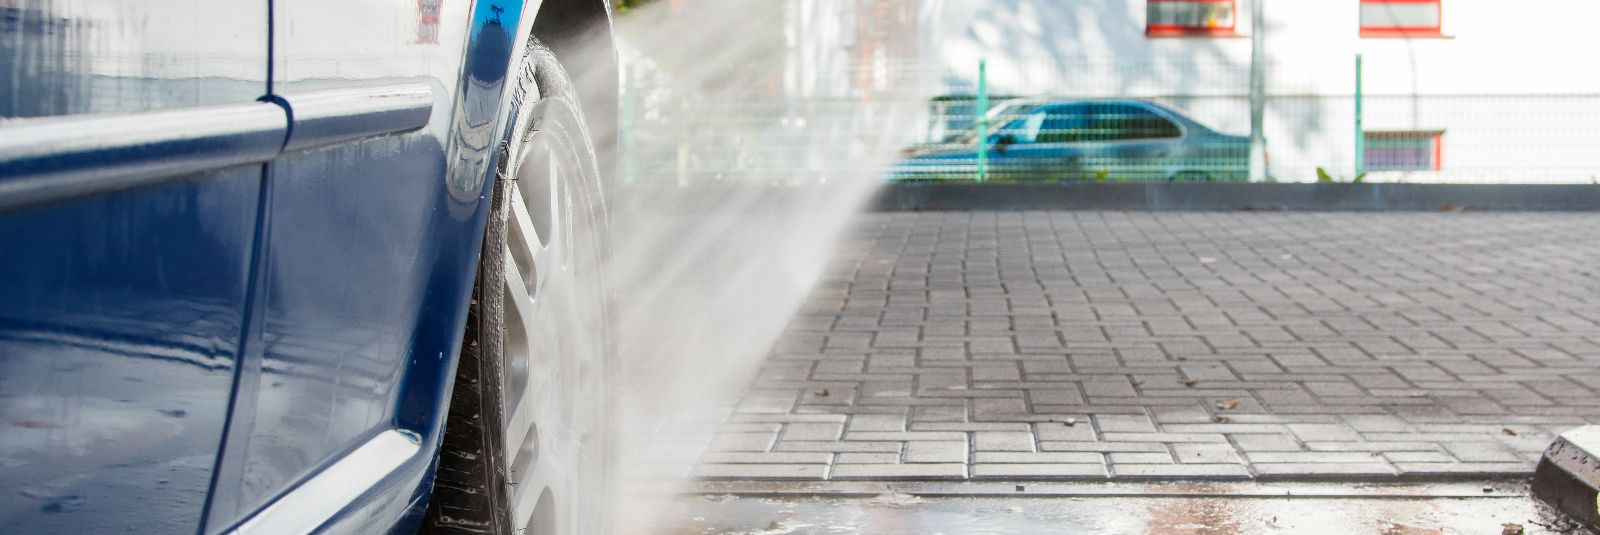 Autoomanikud on sageli teadlikud auto pesemise vajalikkusest, kuid mõnikord võib see tunduda tüütu kohustusena või isegi rahakotti koormavana. Tegelikult on aga